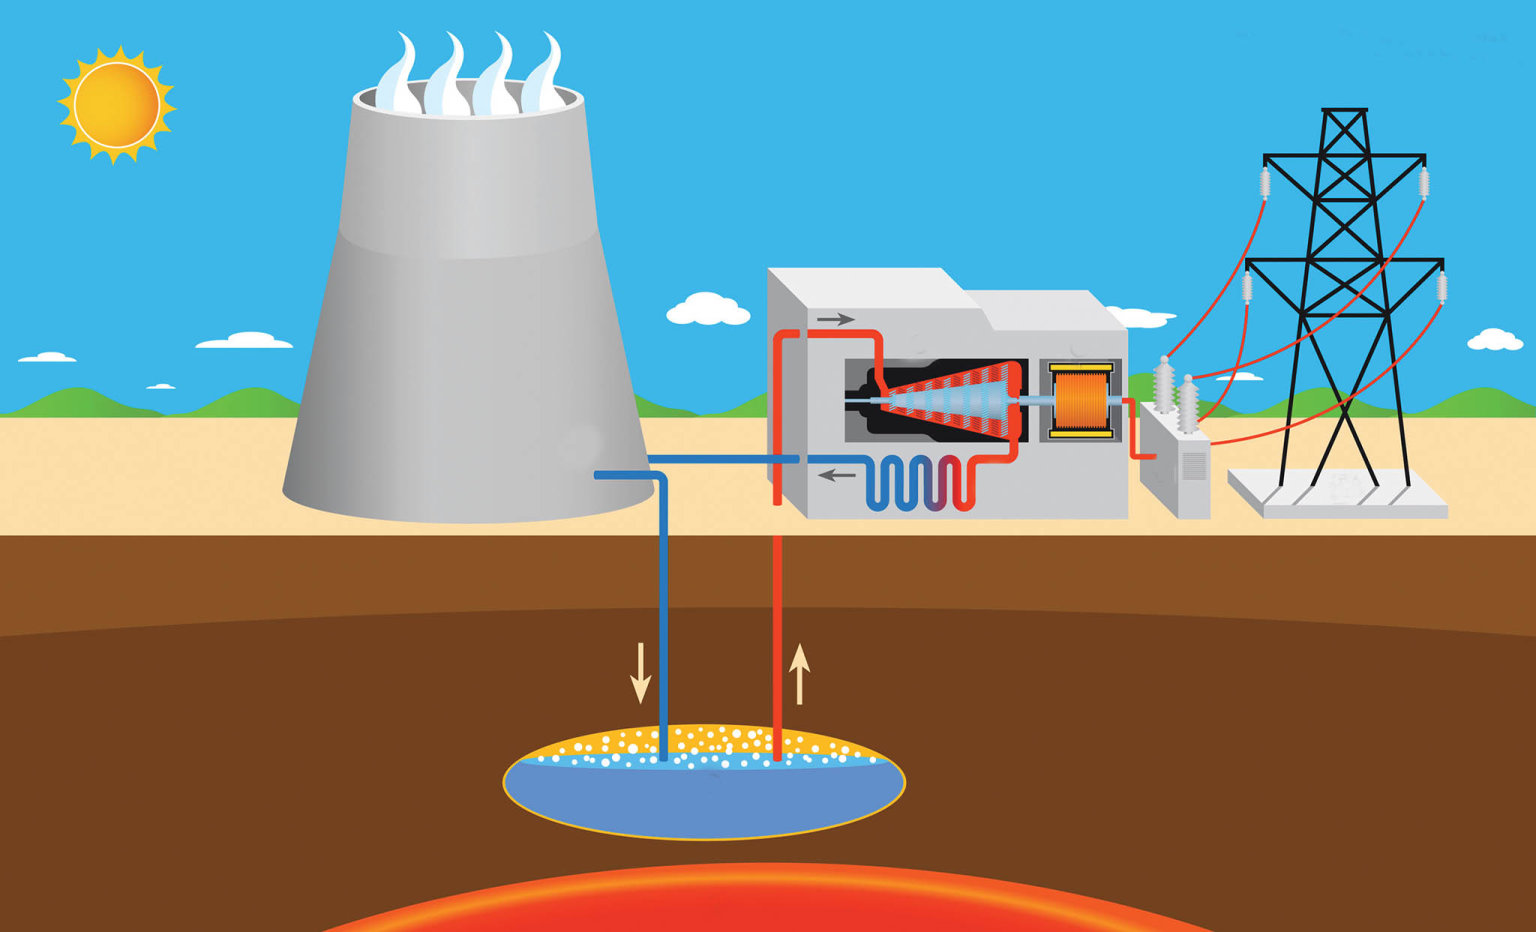 Hlubinnou energii lze využít hydrotermálním pøístupem. To znamená, že se využívá takzvaných zvodnìlých vrstev, které se pøirozenì vyskytují ve vìtších hloubkách v øádech kilometrù.